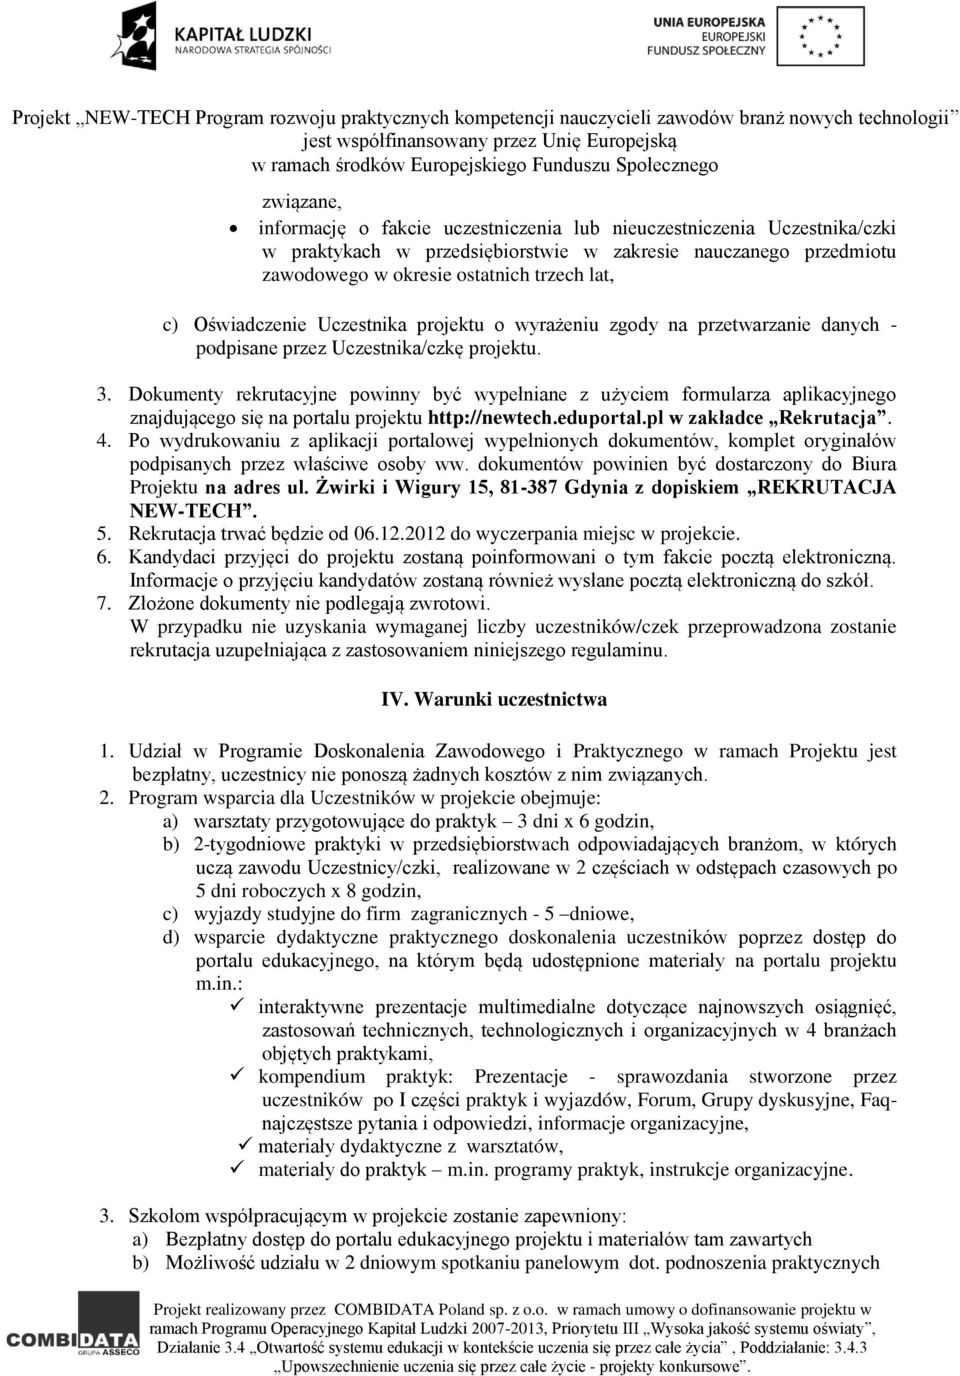 Dokumenty rekrutacyjne powinny być wypełniane z użyciem formularza aplikacyjnego znajdującego się na portalu projektu http://newtech.eduportal.pl w zakładce Rekrutacja. 4.